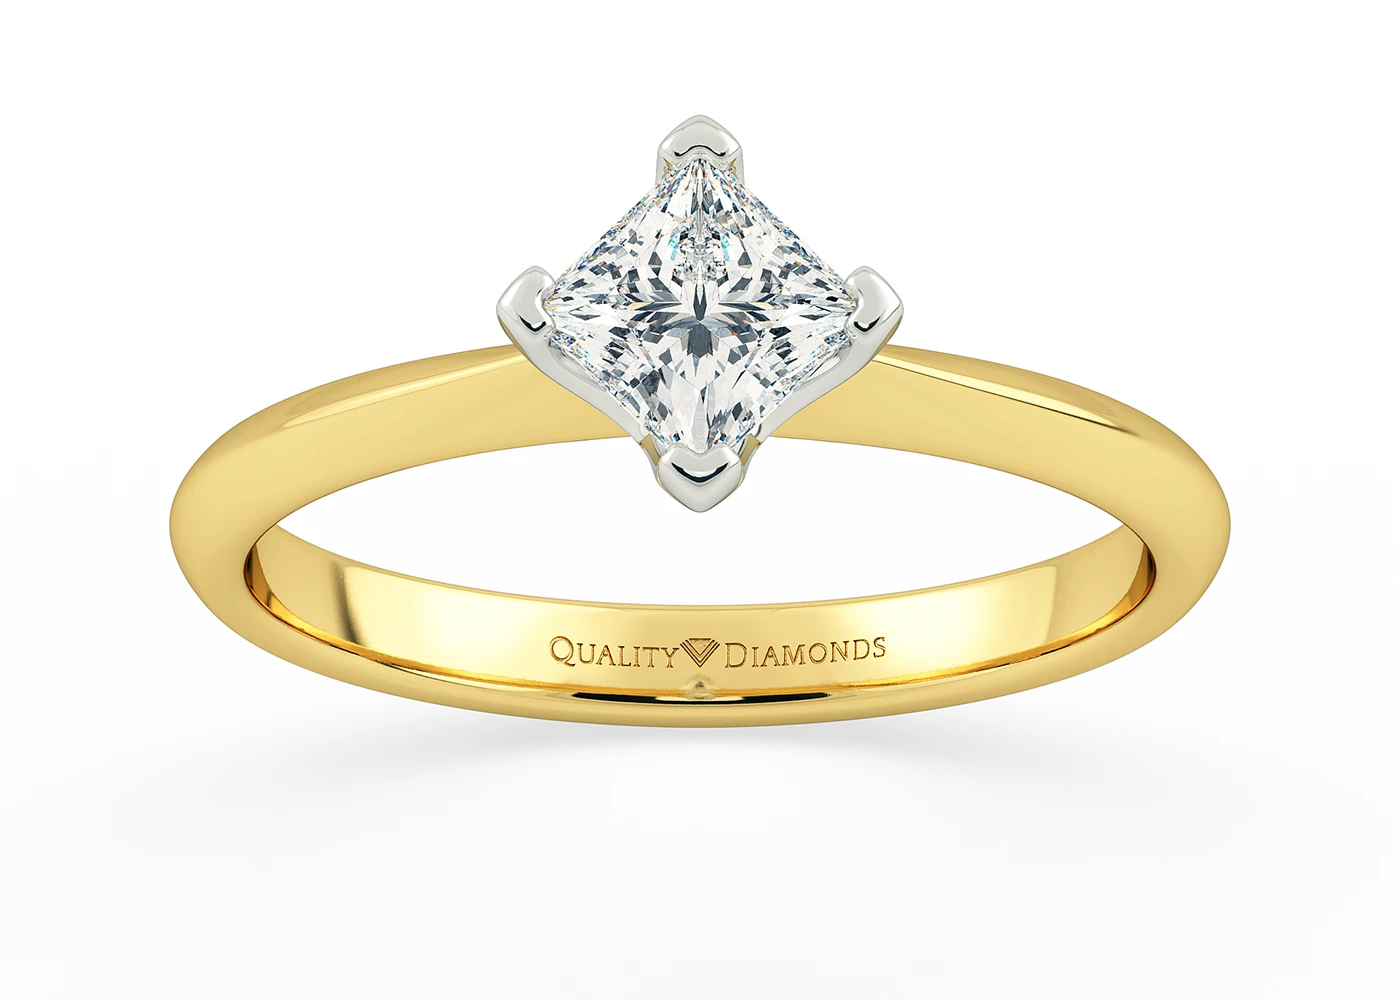 Princess Olfa Diamond Ring in 18K Yellow Gold